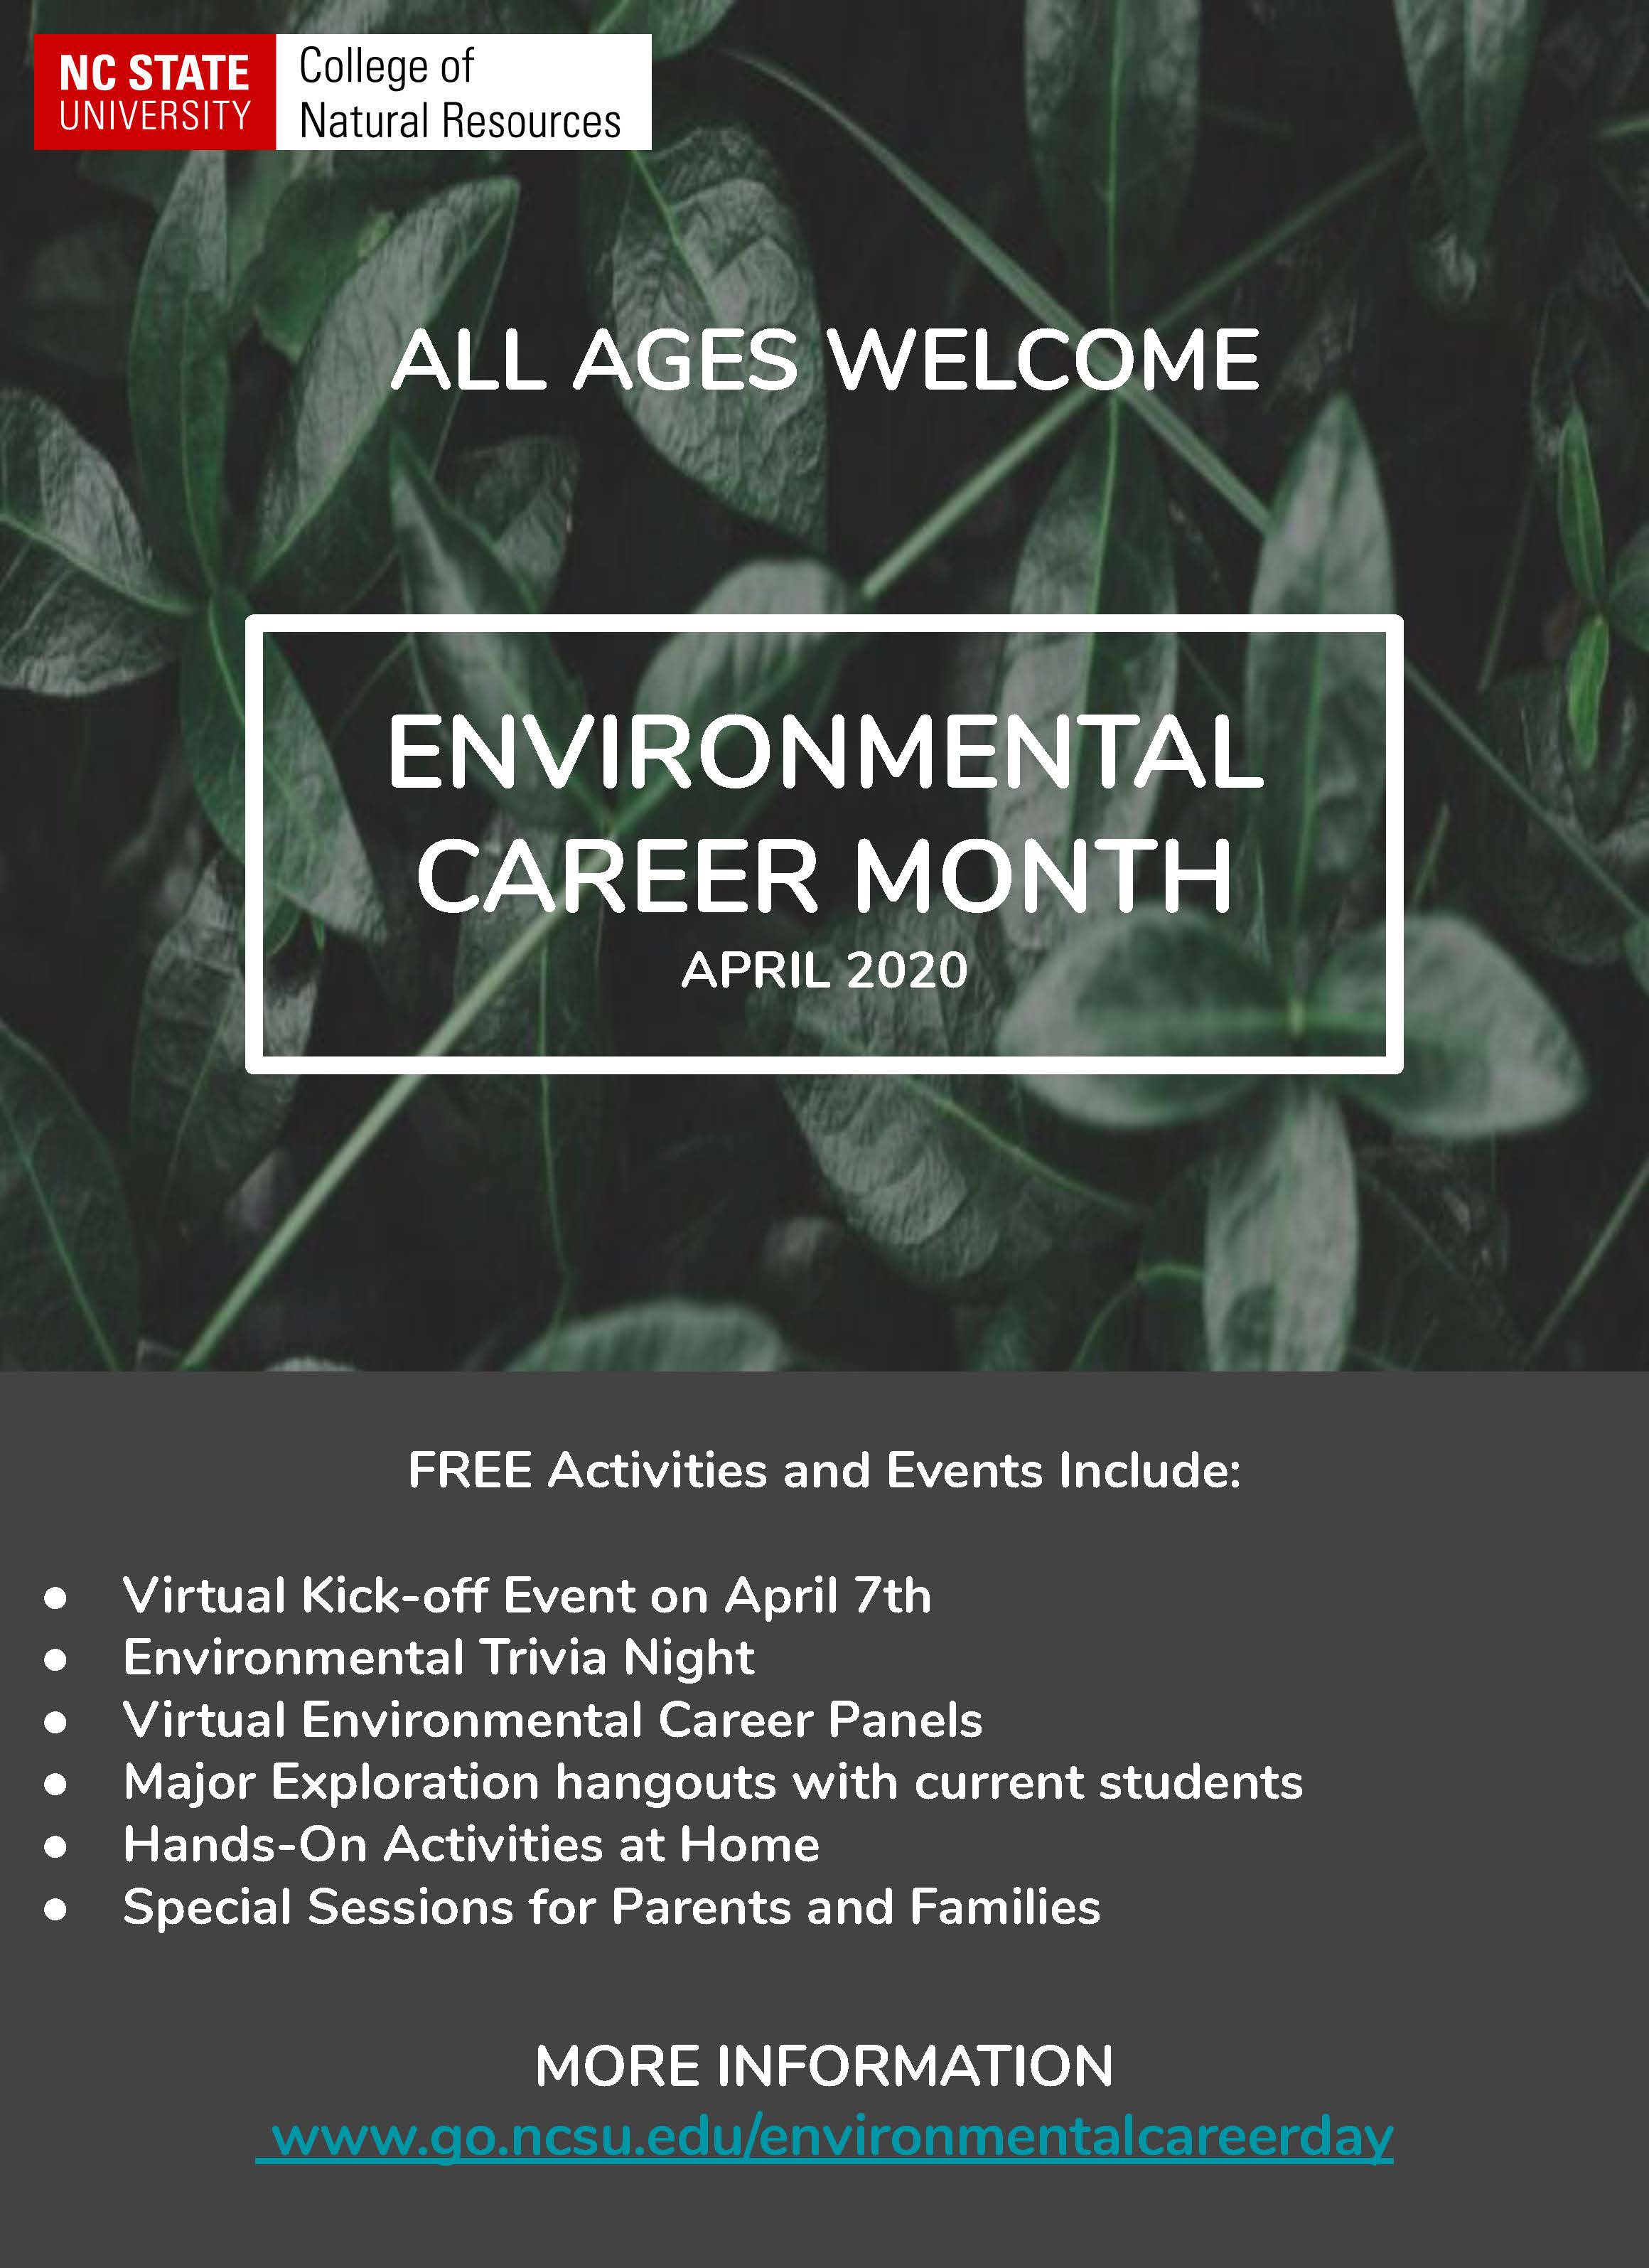 Environmental Career Month flyer